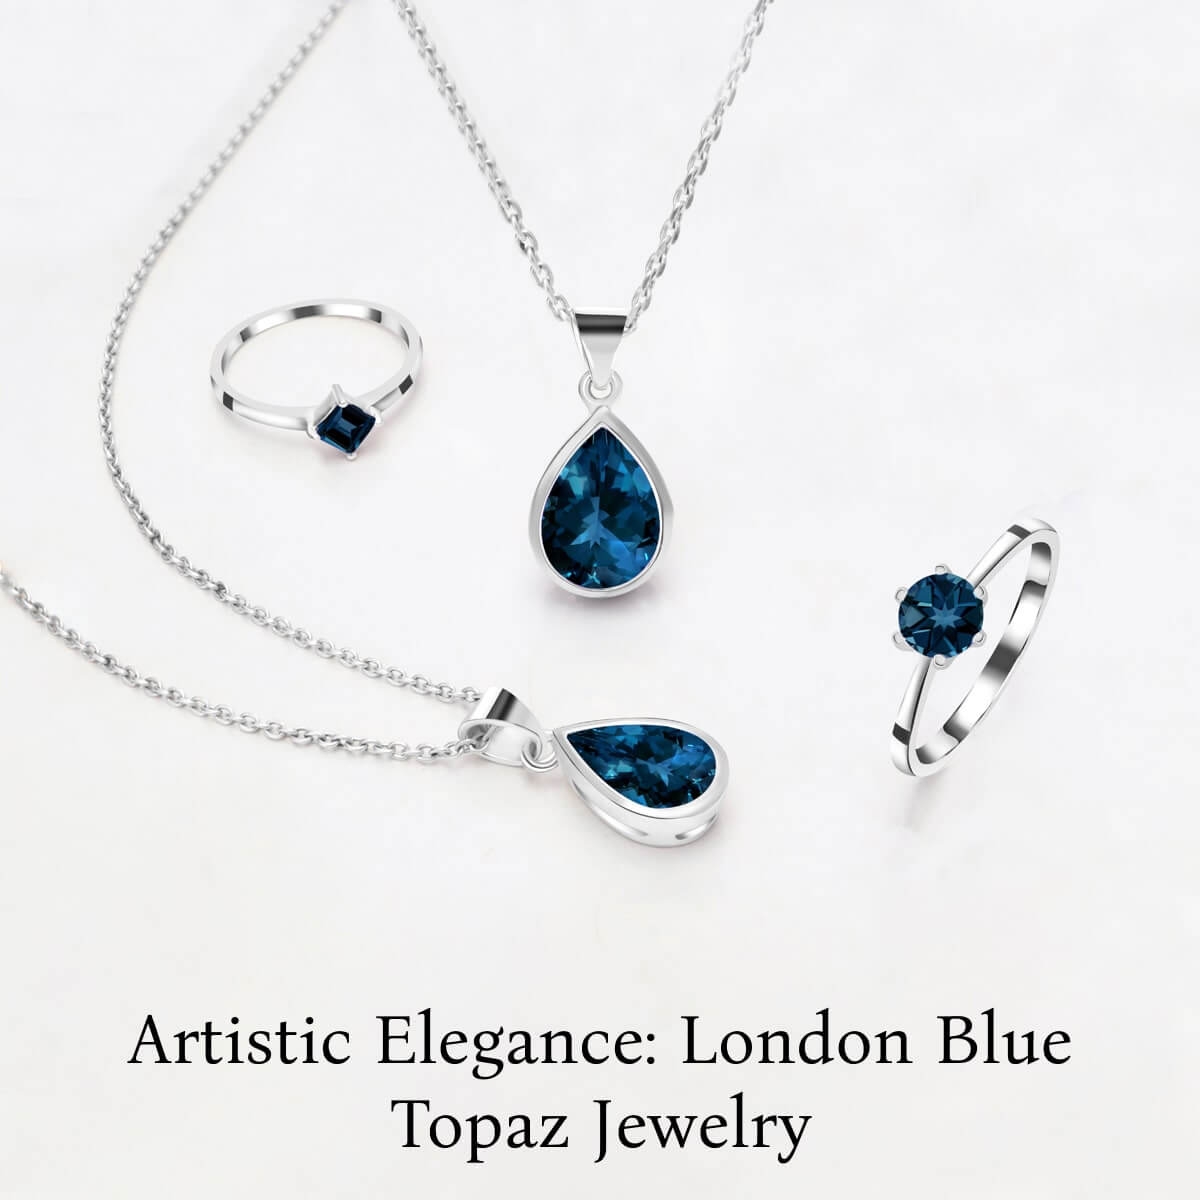 London Blue Topaz Gemstone Jewelry